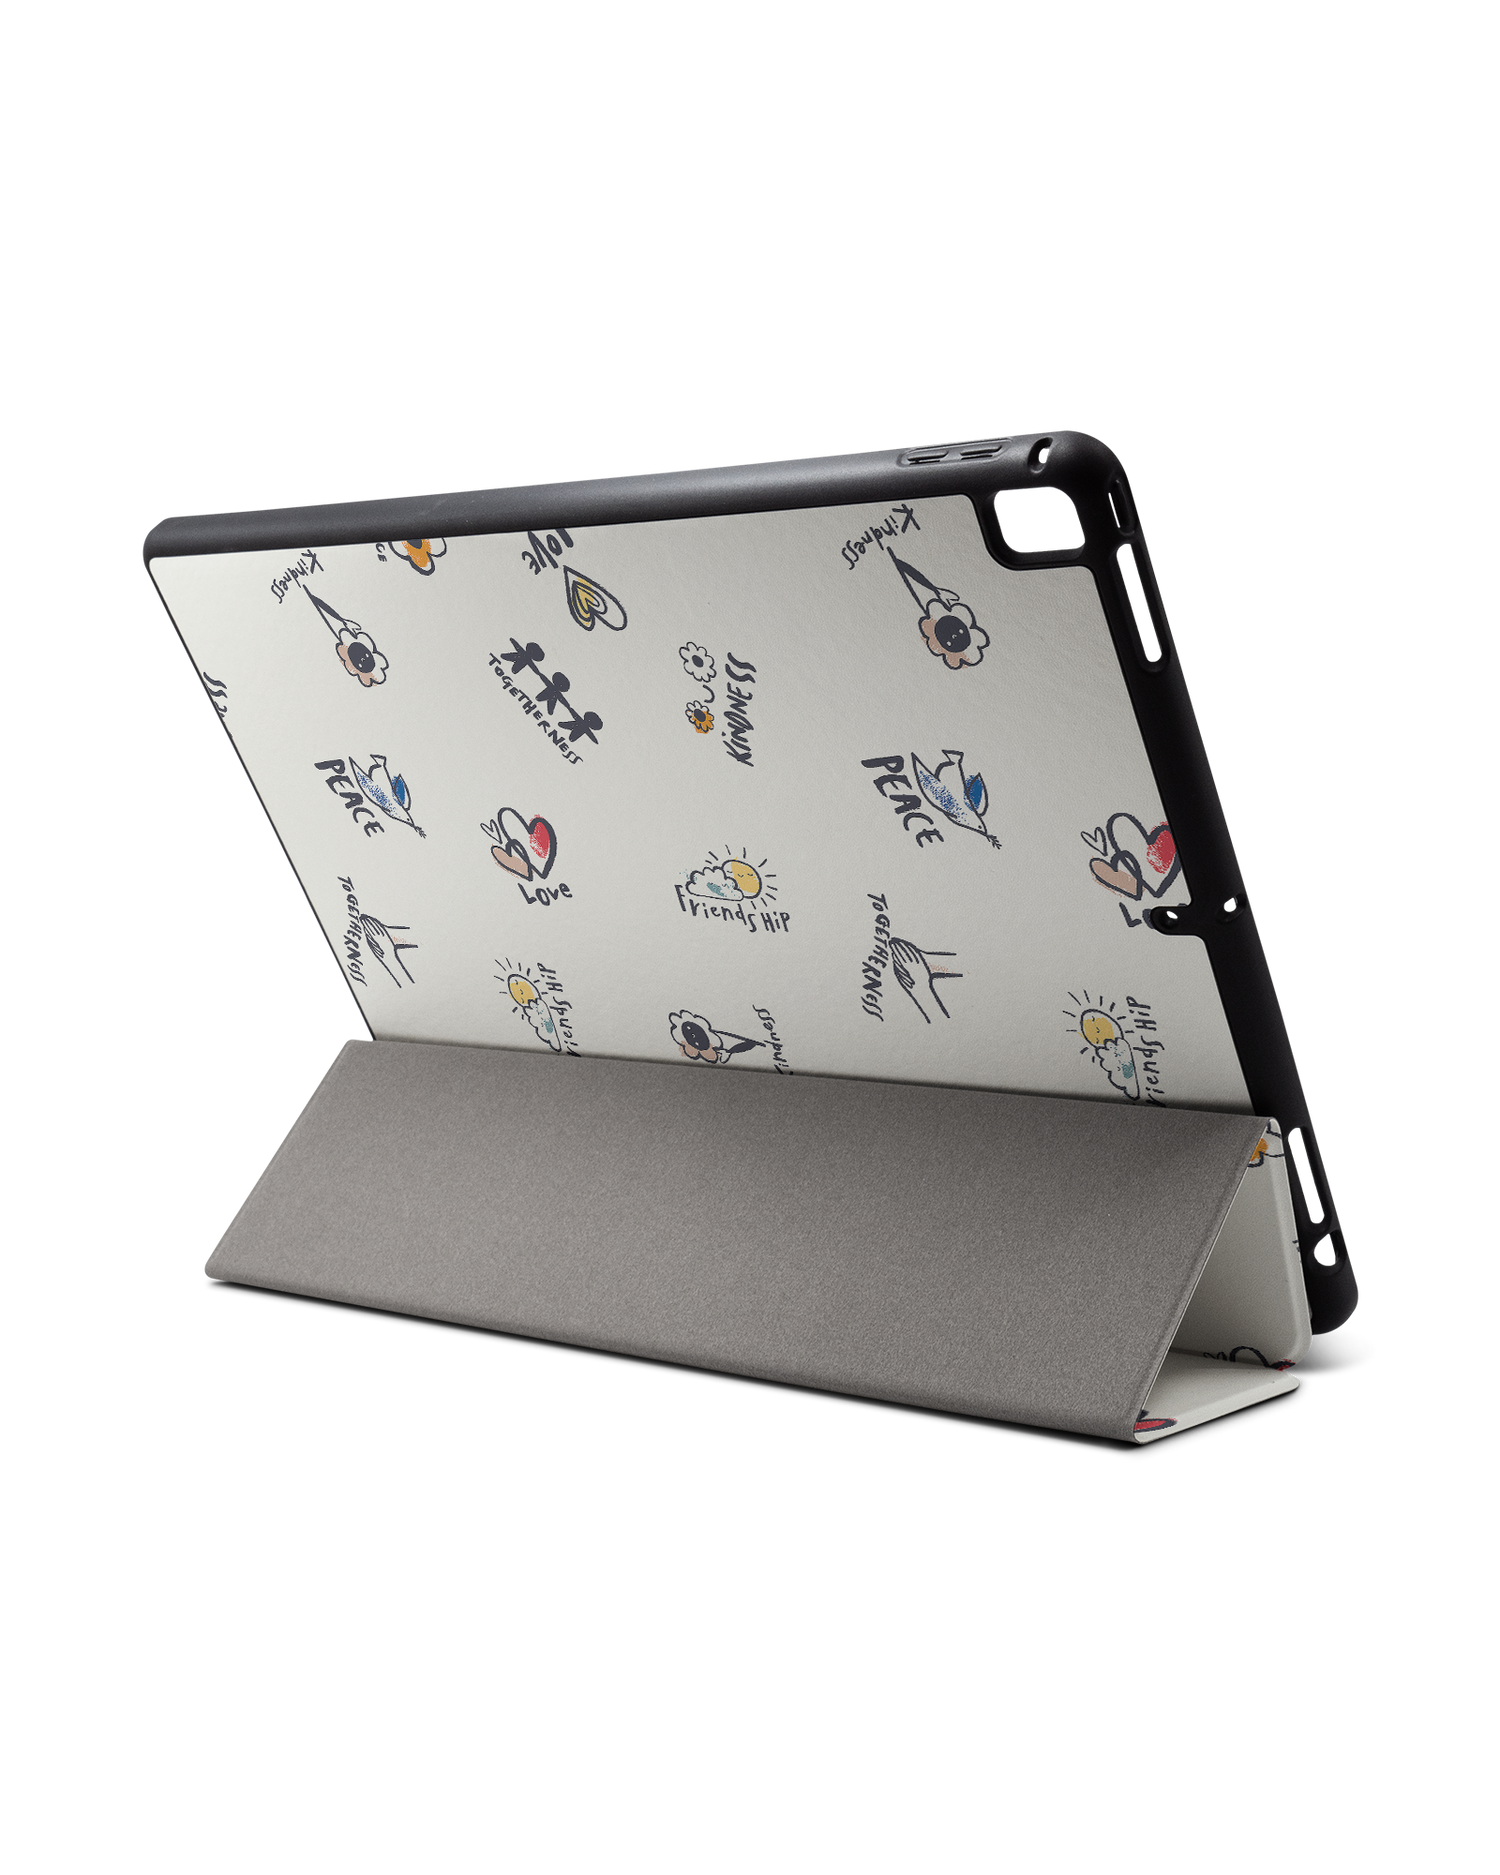 Peace And Love iPad Hülle mit Stifthalter für Apple iPad Pro 2 12.9'' (2017): Aufgestellt im Querformat von hinten